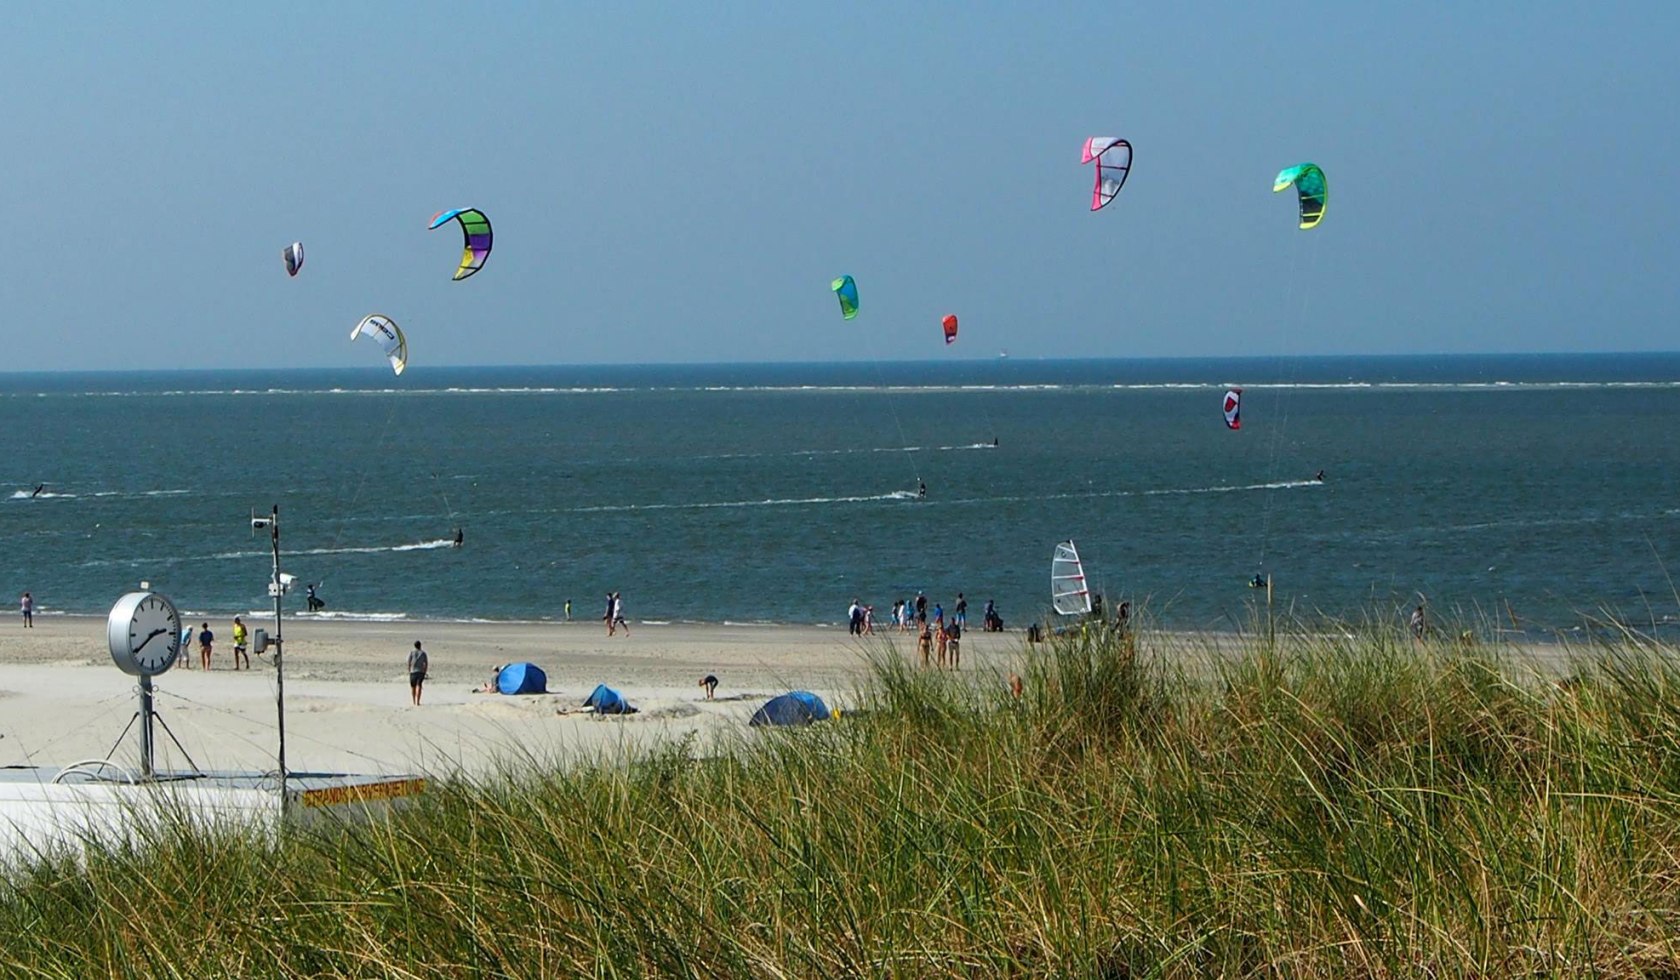 kite surfing, © Kurverwaltung Baltrum/ Stephan Moschner